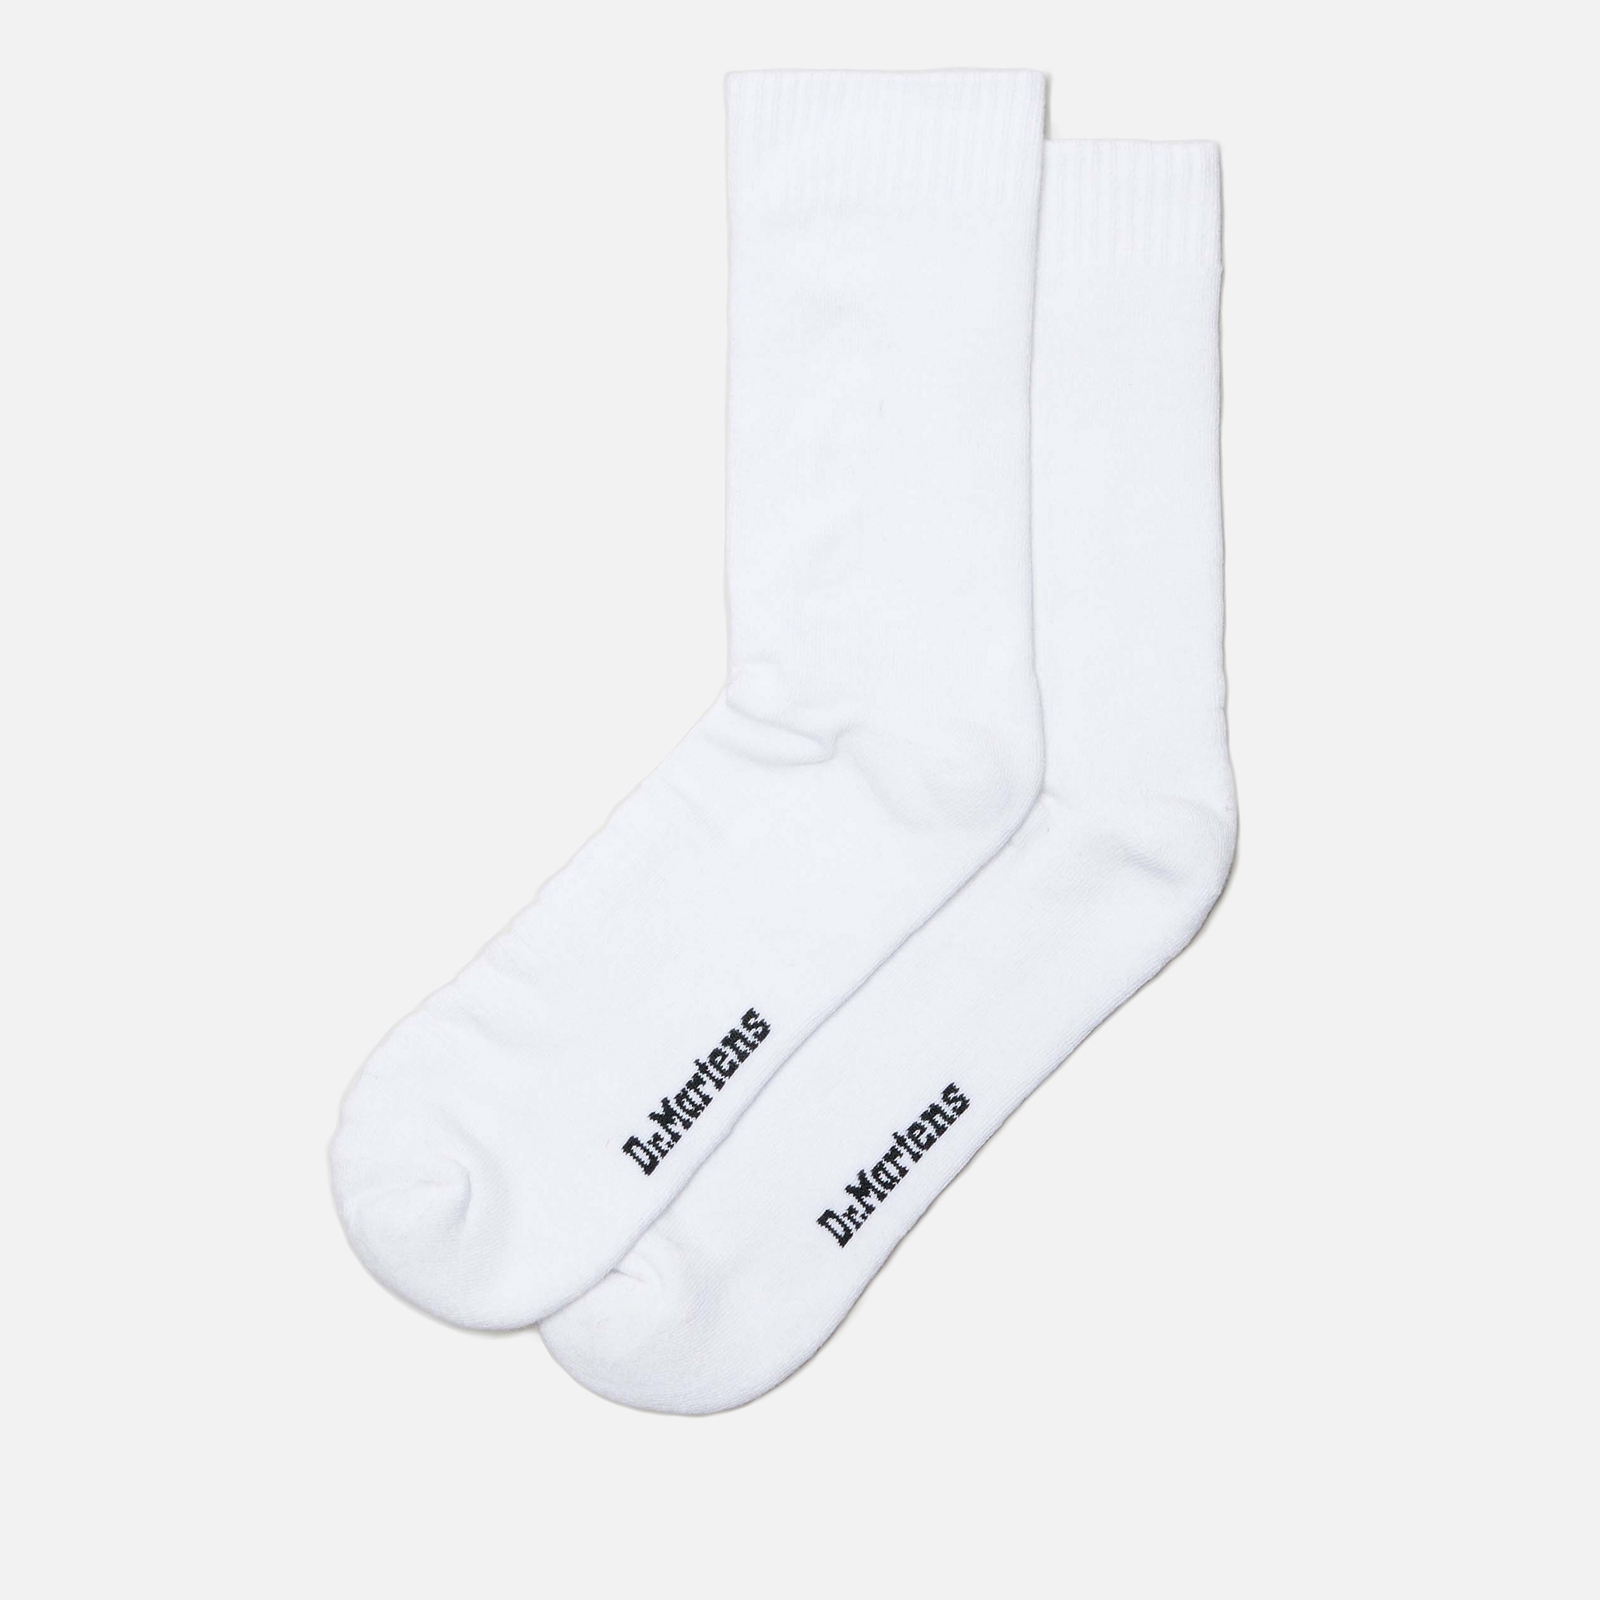 Dr. Martens Double Dock Cotton-Blend Socks - M/L